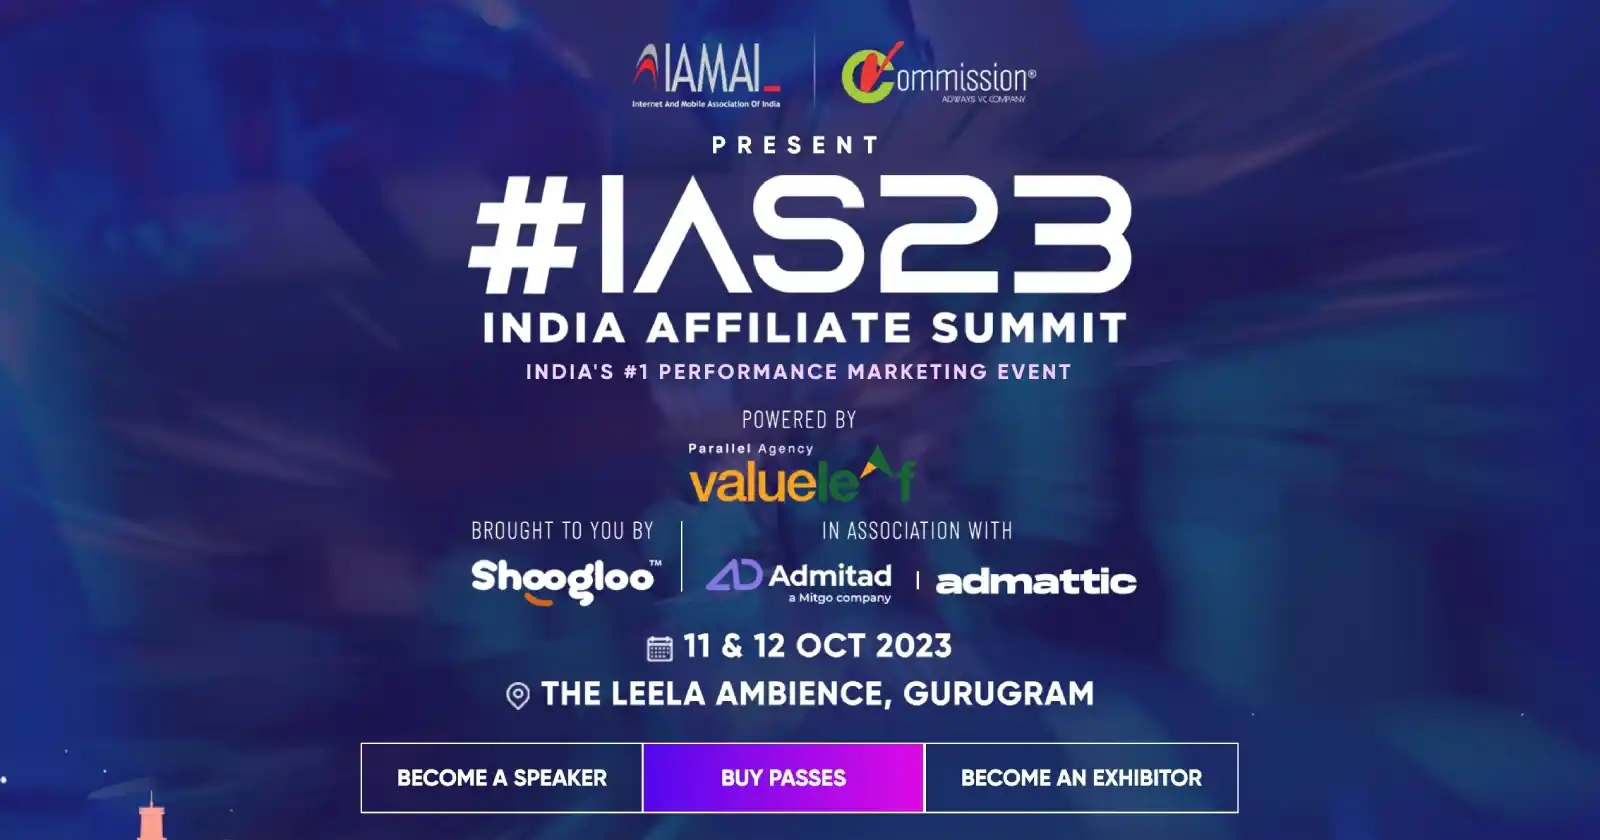 India affiliate summit 2023 event